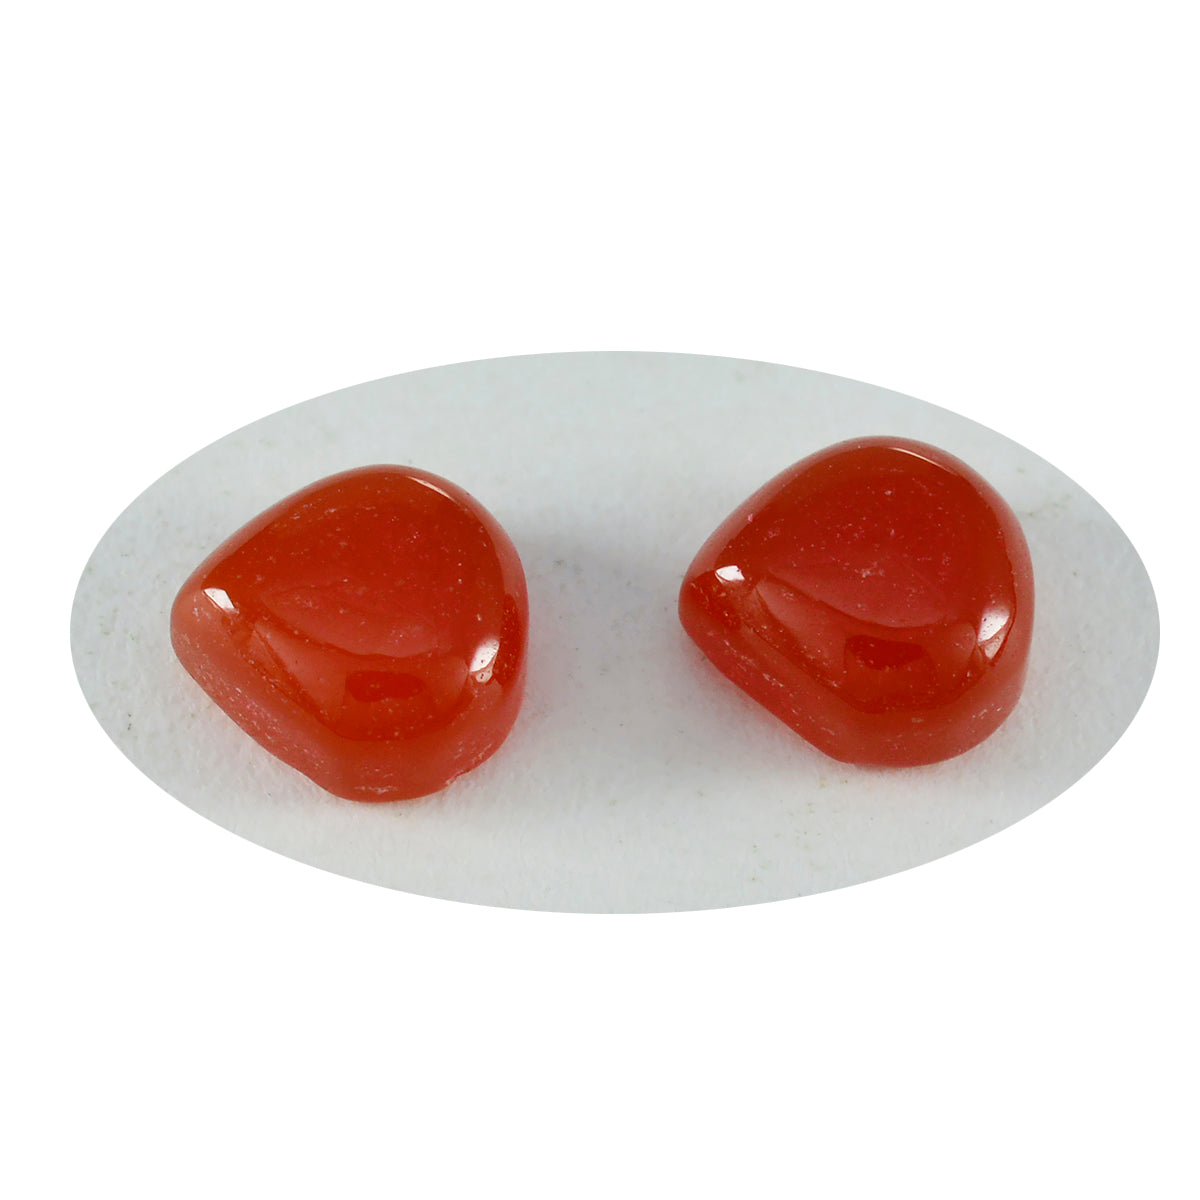 riyogems 1pc cabochon di onice rosso 13x13 mm a forma di cuore di qualità sorprendente, pietra preziosa sciolta